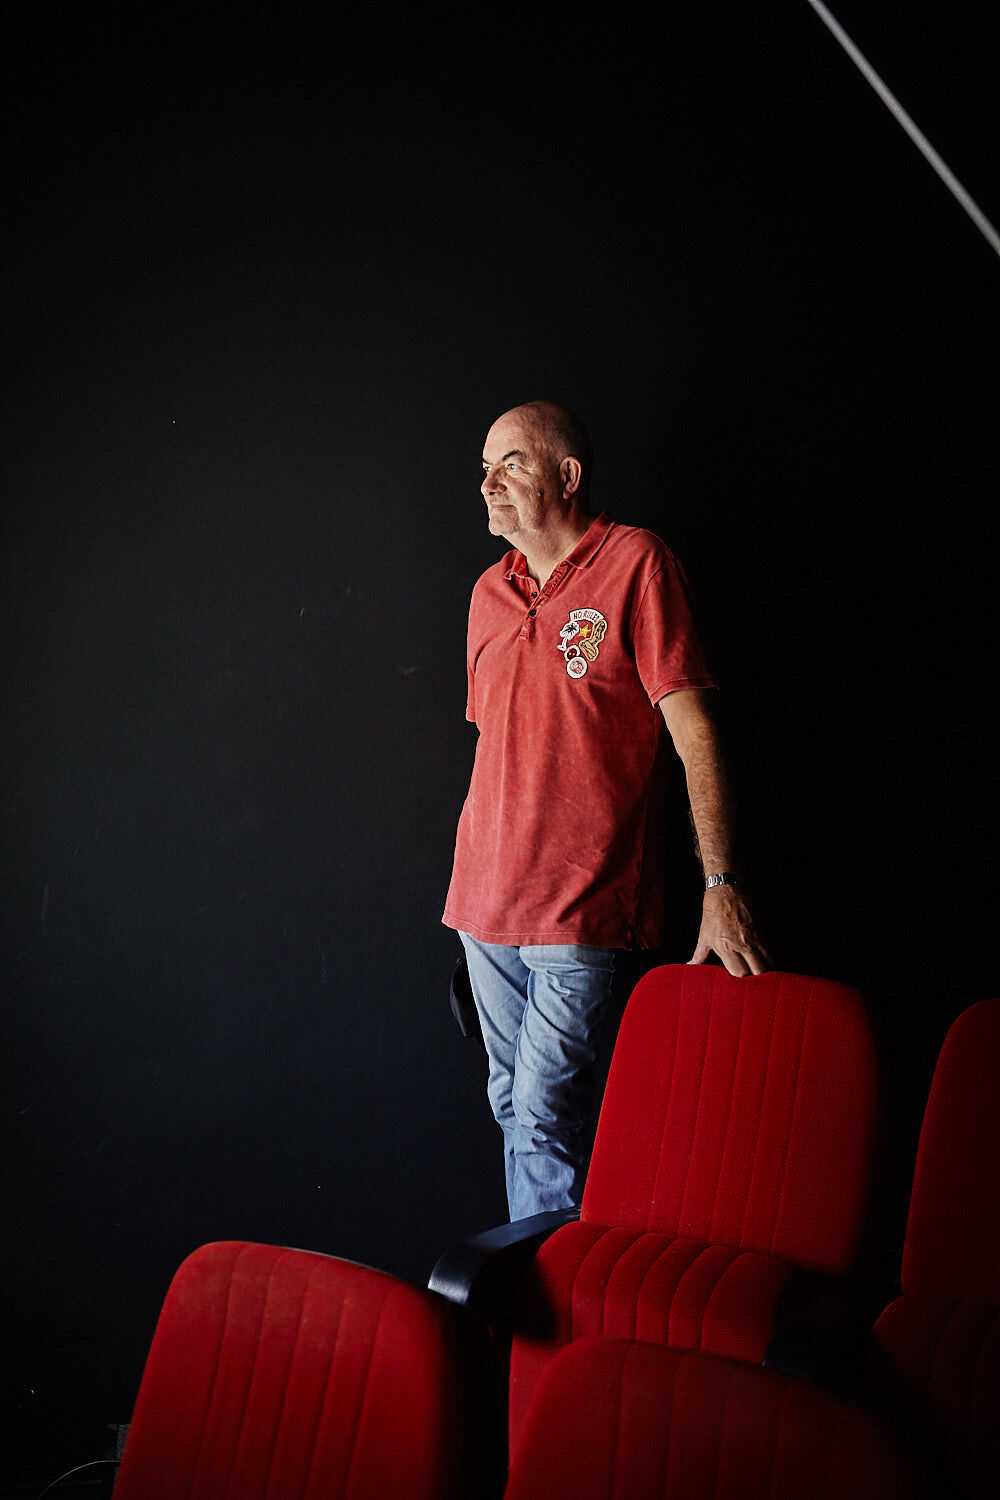 Thomas Zauner, Gründer des Unternehmens Scanline, lehnt in Kinosaal an einem roten Kinosessel